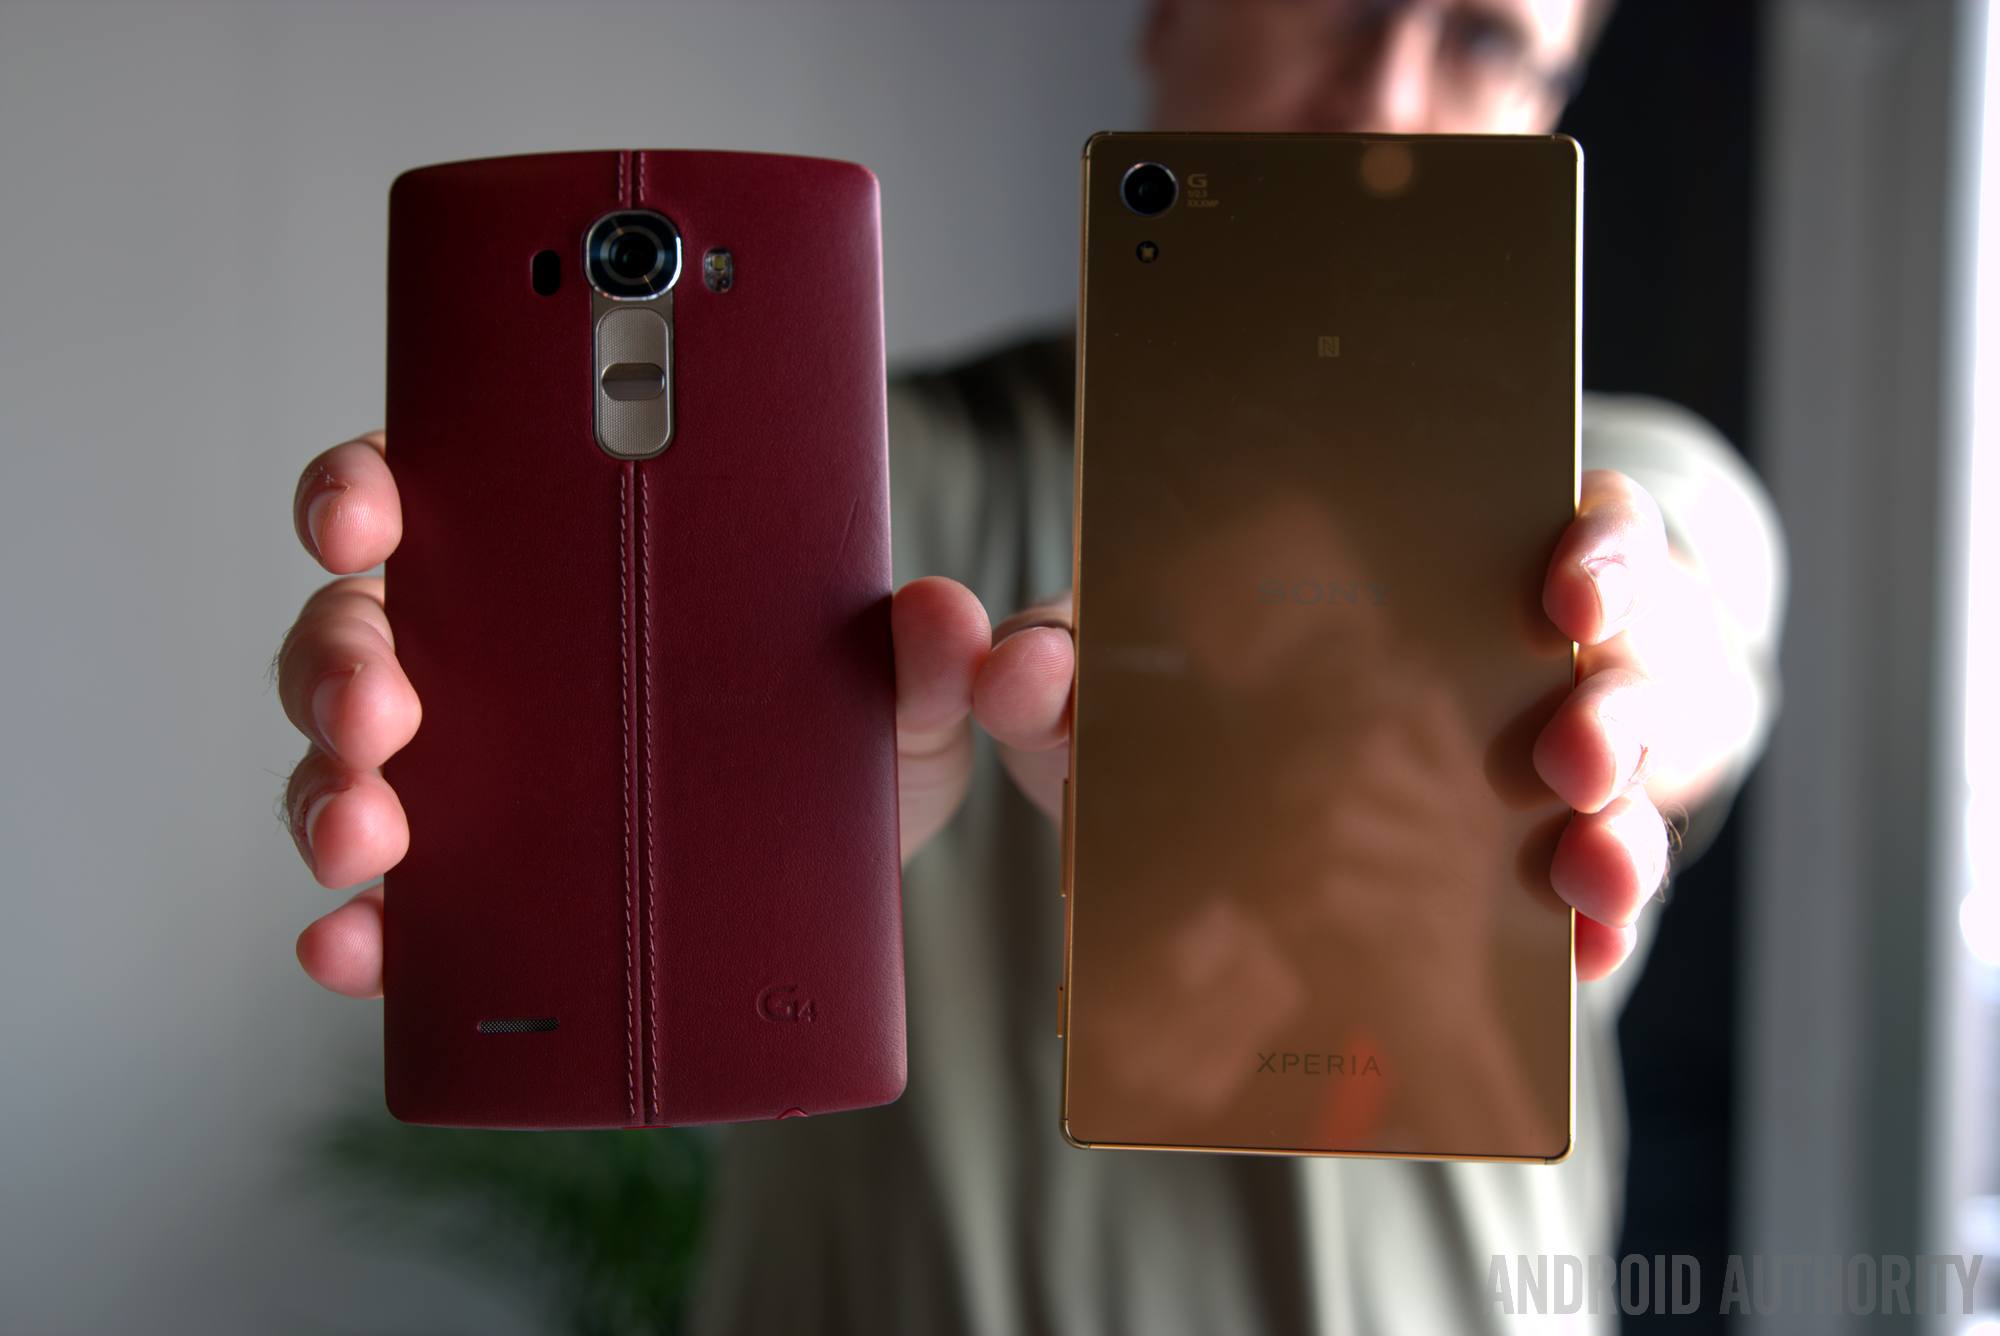 Sony Z5 Premium vs LG G4 quick look